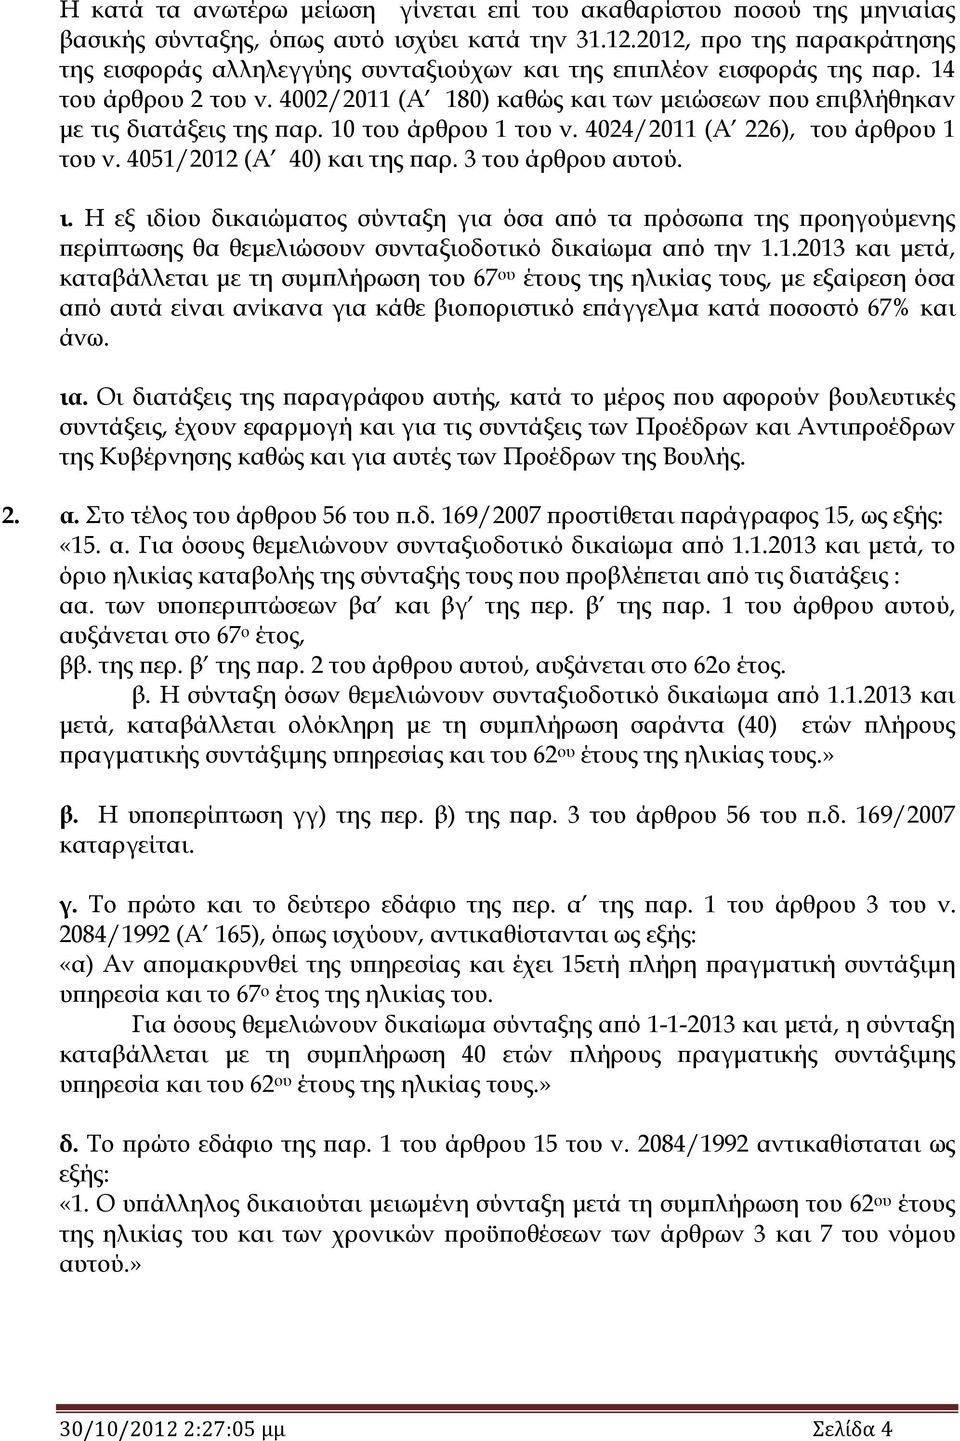 4002/2011 (Α 180) καθώς και των μειώσεων που επιβλήθηκαν με τις διατάξεις της παρ. 10 του άρθρου 1 του ν. 4024/2011 (Α 226), του άρθρου 1 του ν. 4051/2012 (Α 40) και της παρ. 3 του άρθρου αυτού. ι.